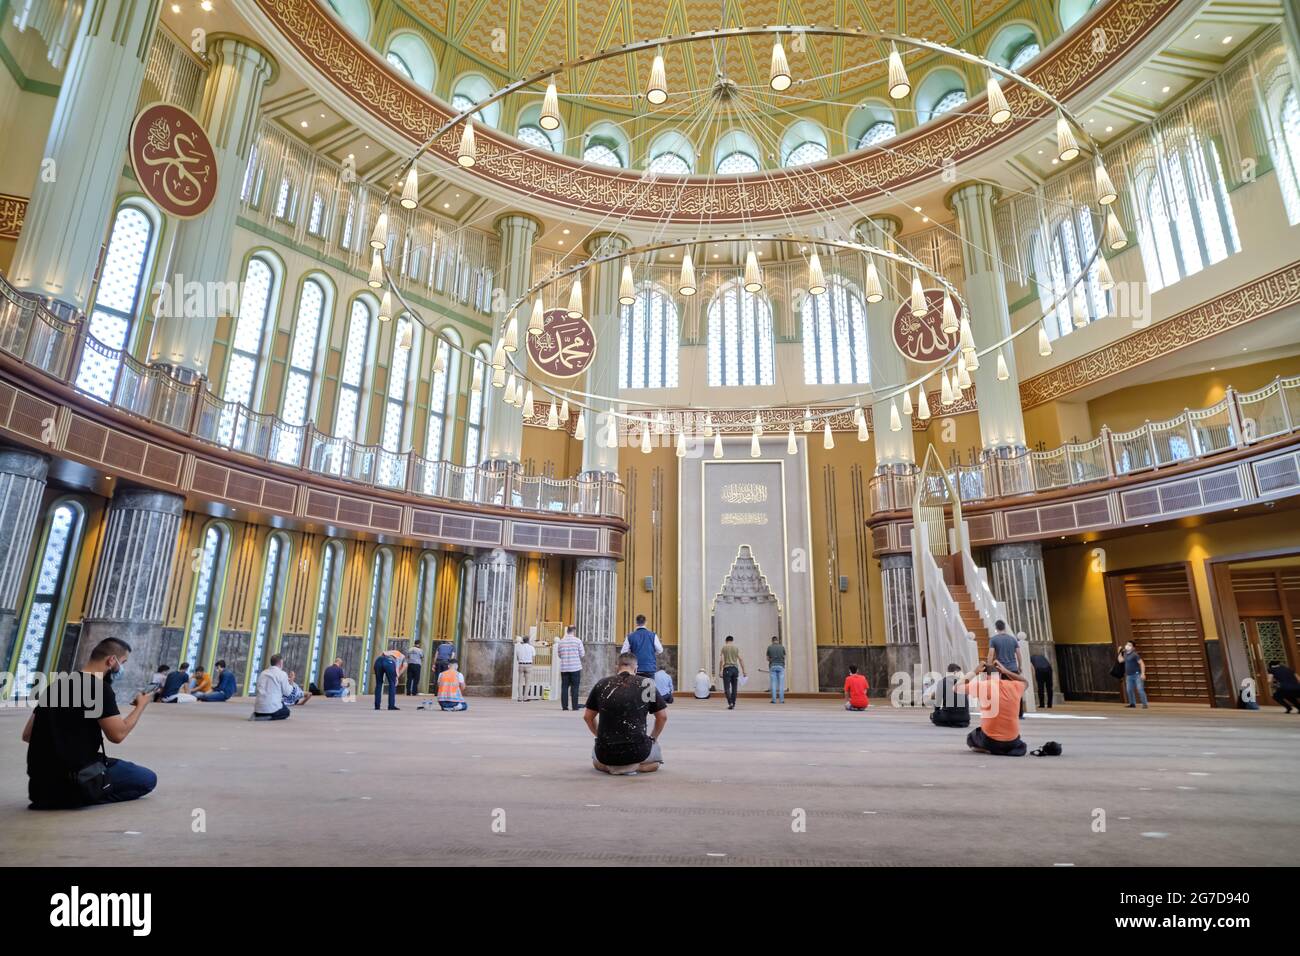 Detalle interior de la Mezquita Taksim, un complejo de mezquita en la Plaza Taksim, Estambul, Turquía Foto de stock